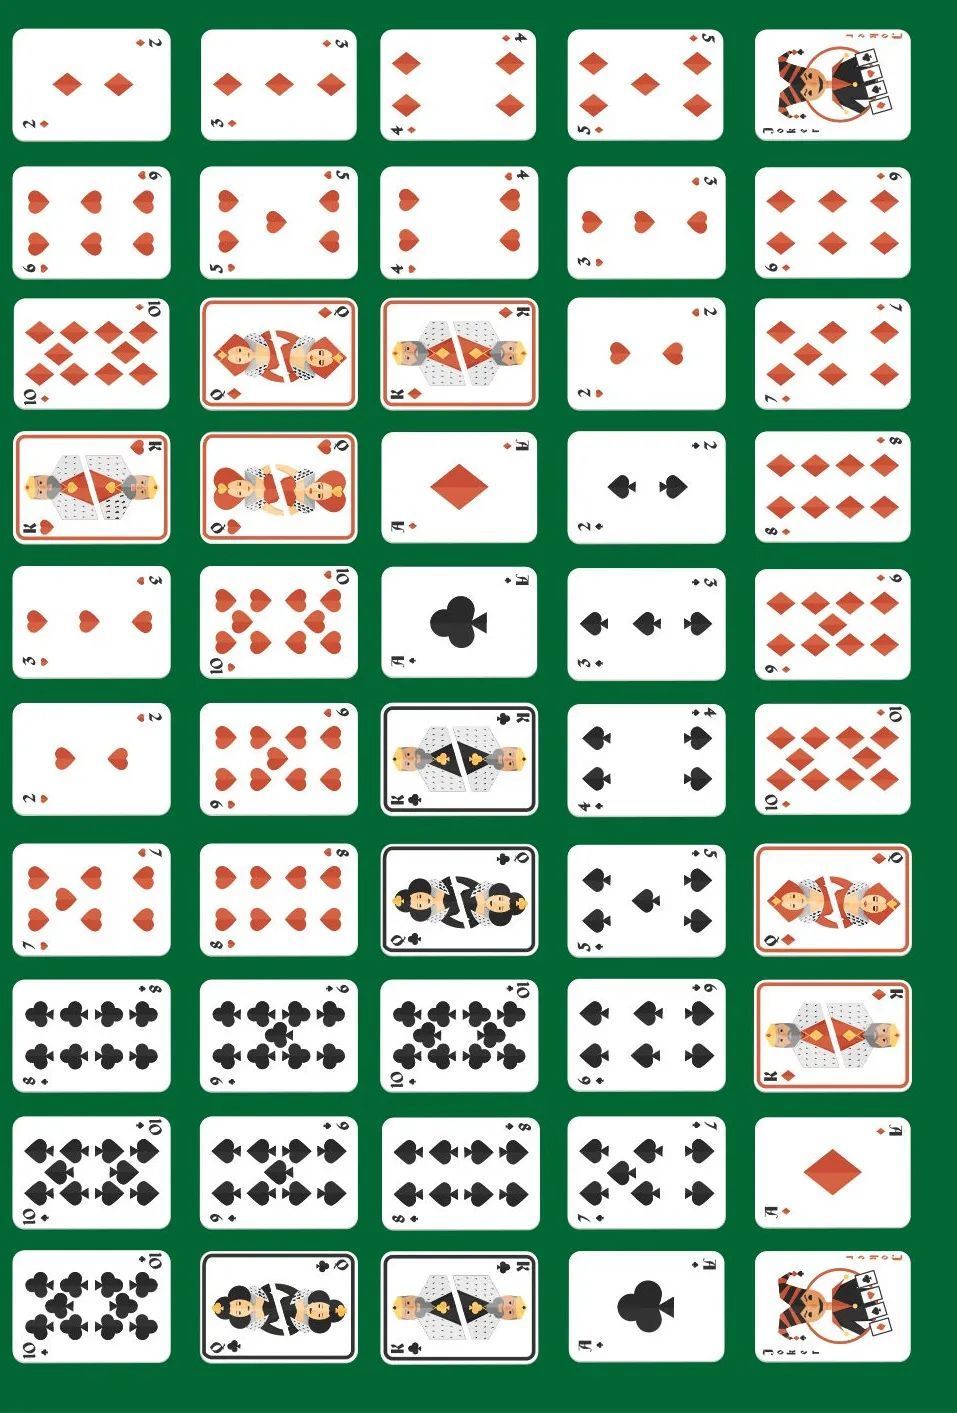 给大家的自打印桌游:用两副扑克牌下的多人五子棋